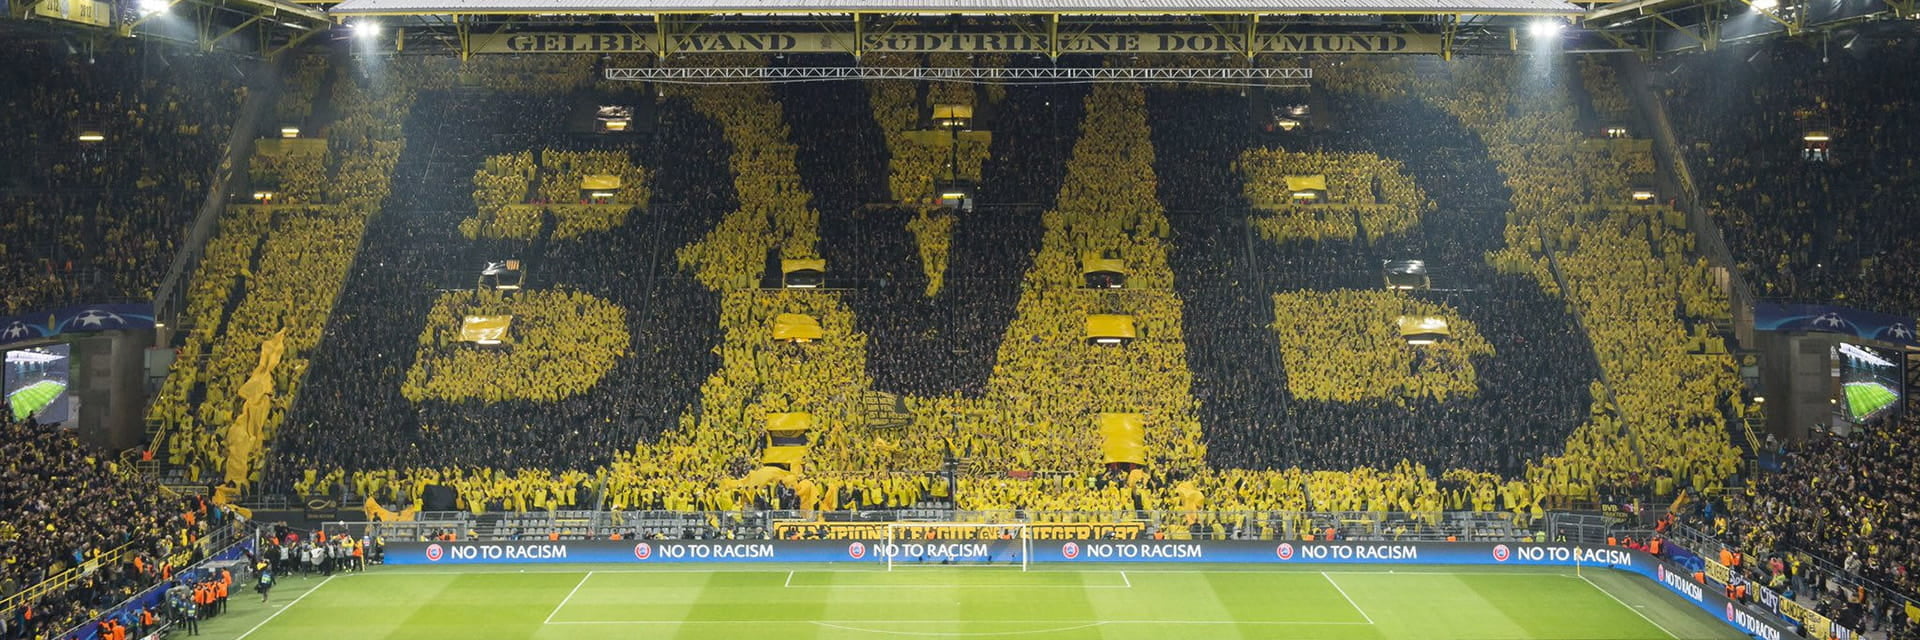 Borussia Dortmund - VfB Stuttgart, 7 outubrona 15:30